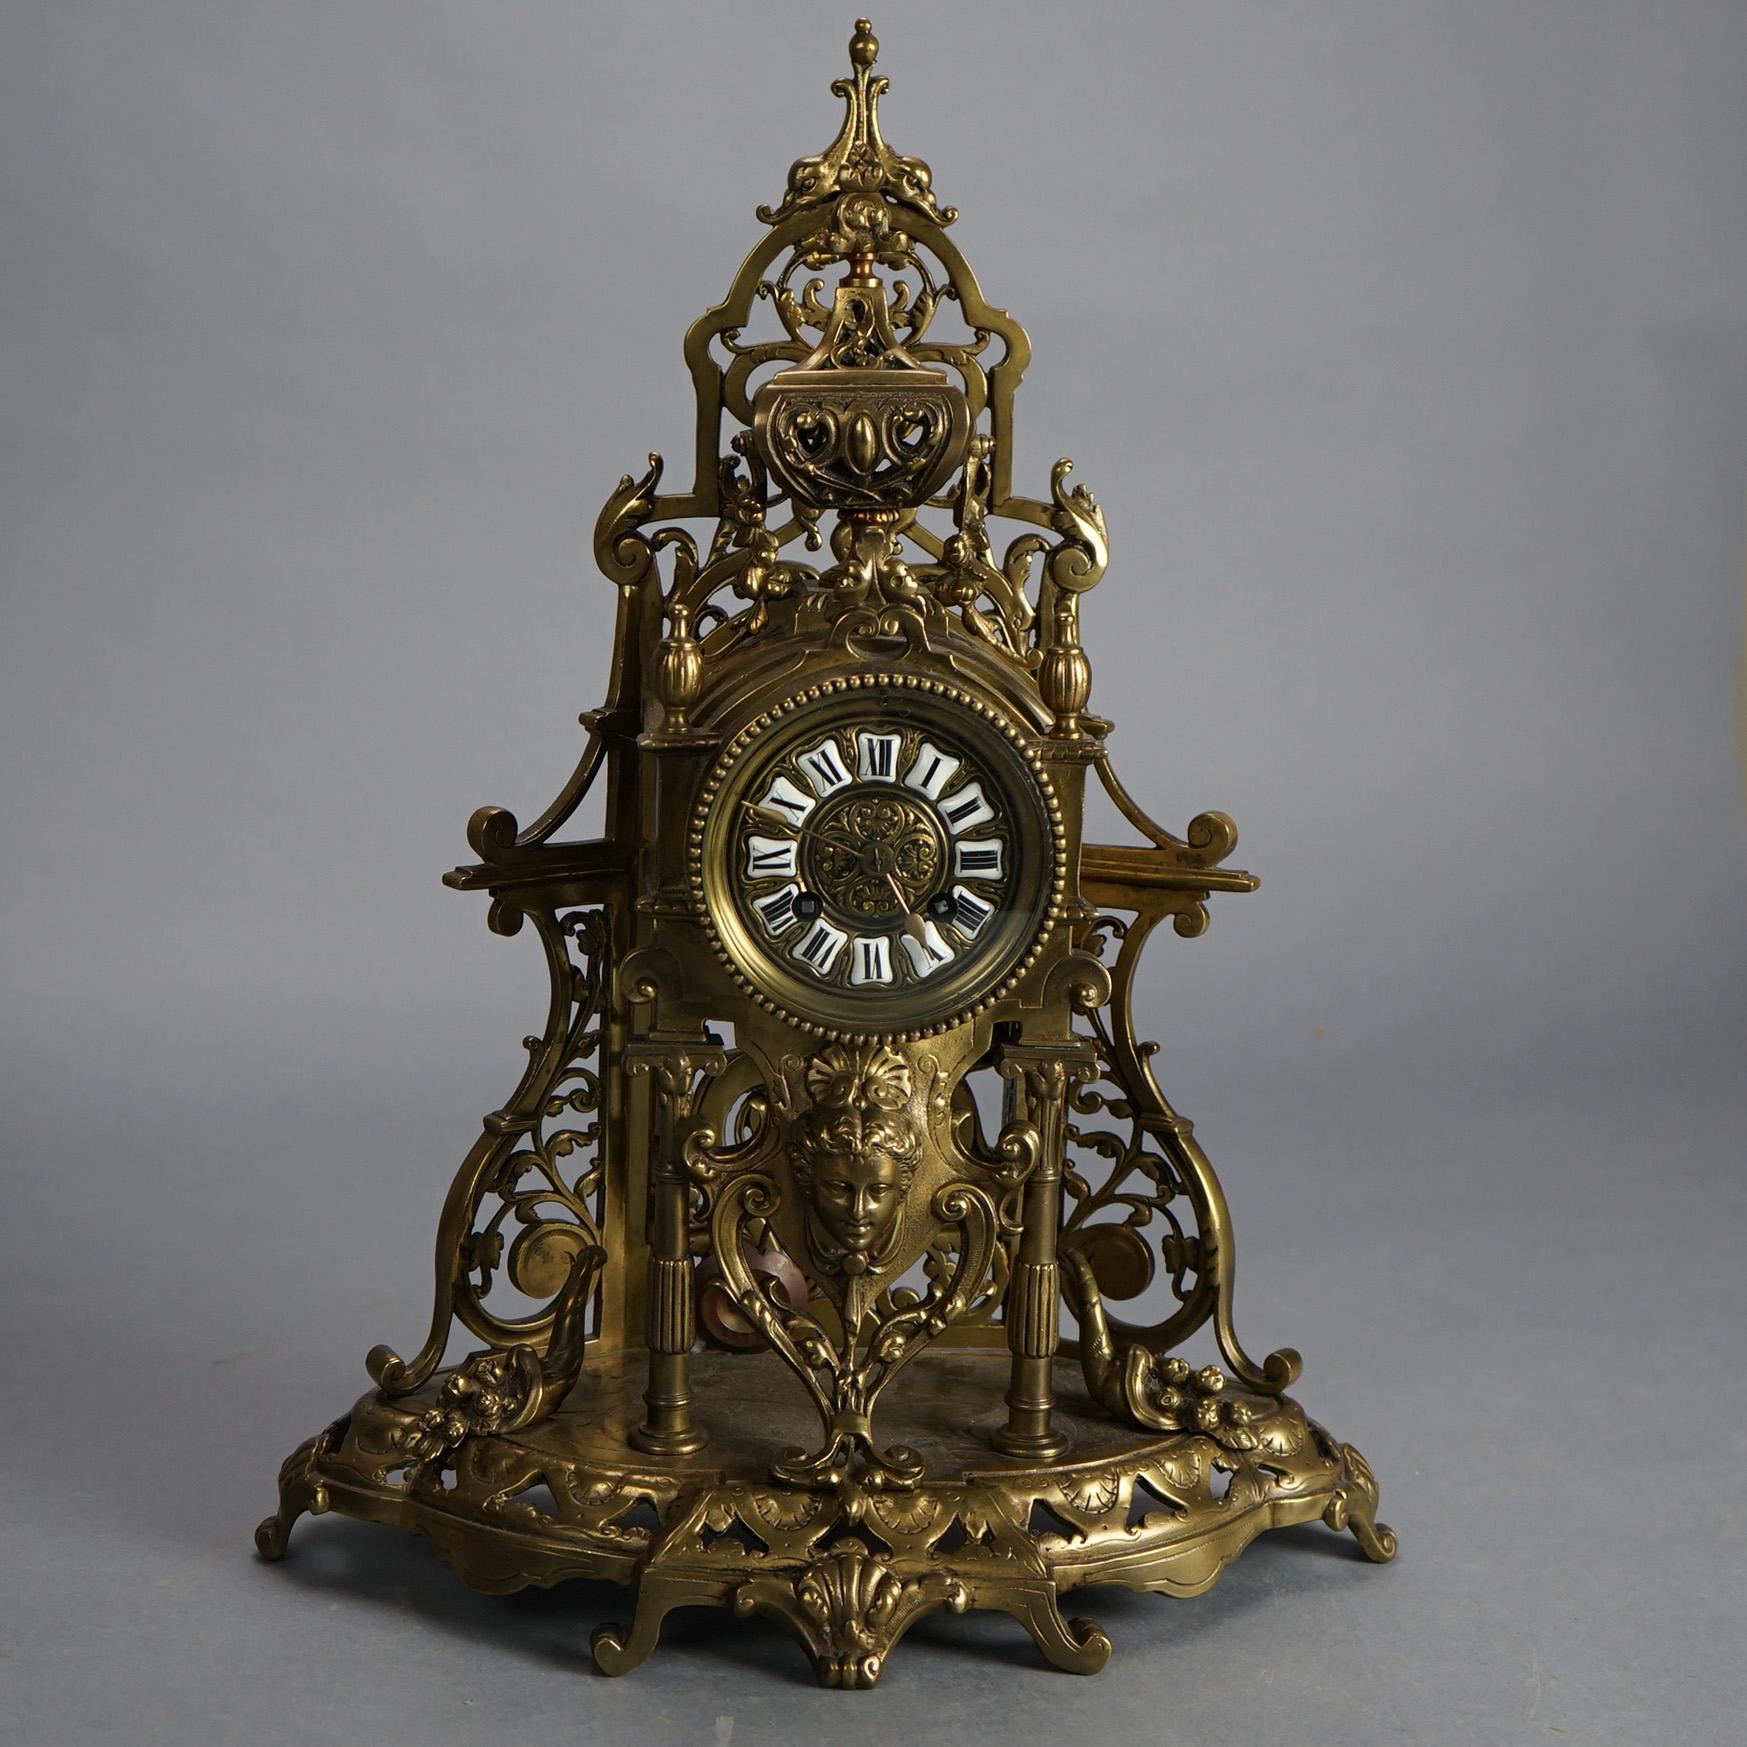 Ancienne horloge figurative en bronze coulé de style renaissance avec masque de femme et boîtier à feuillage percé, C1870

Dimensions - 18,25 